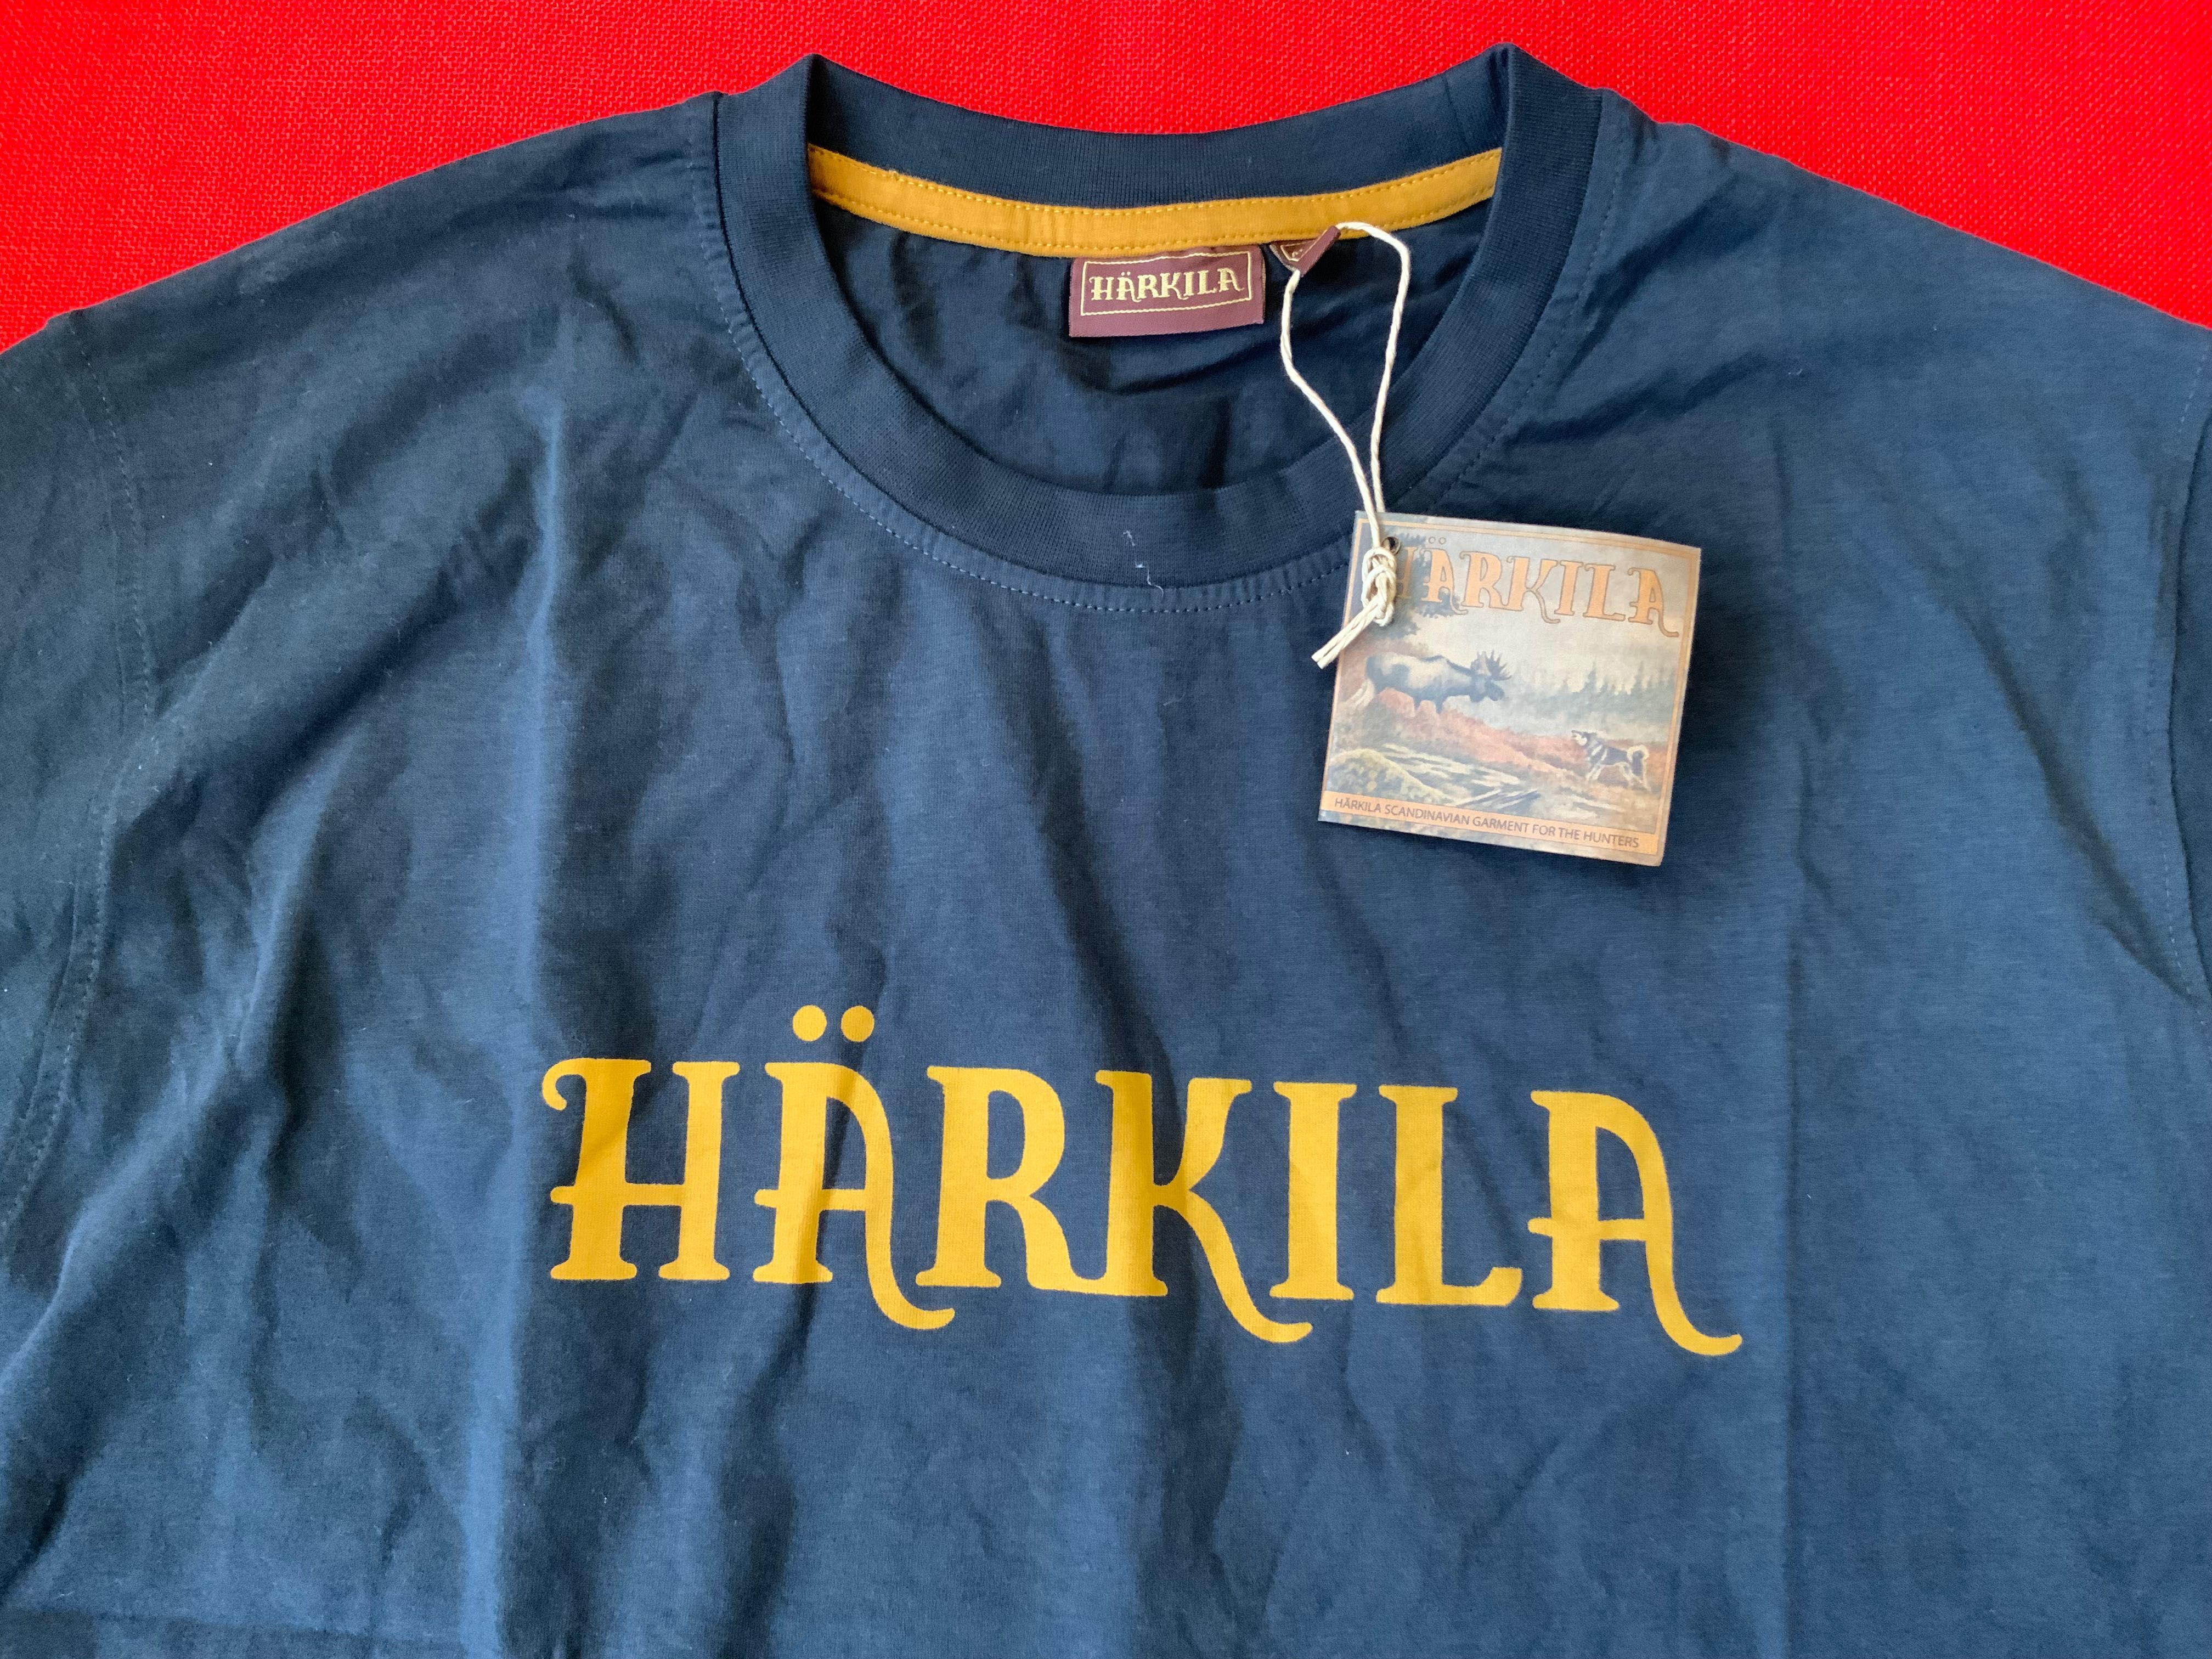 Harkila-оригинална тениска 3xl